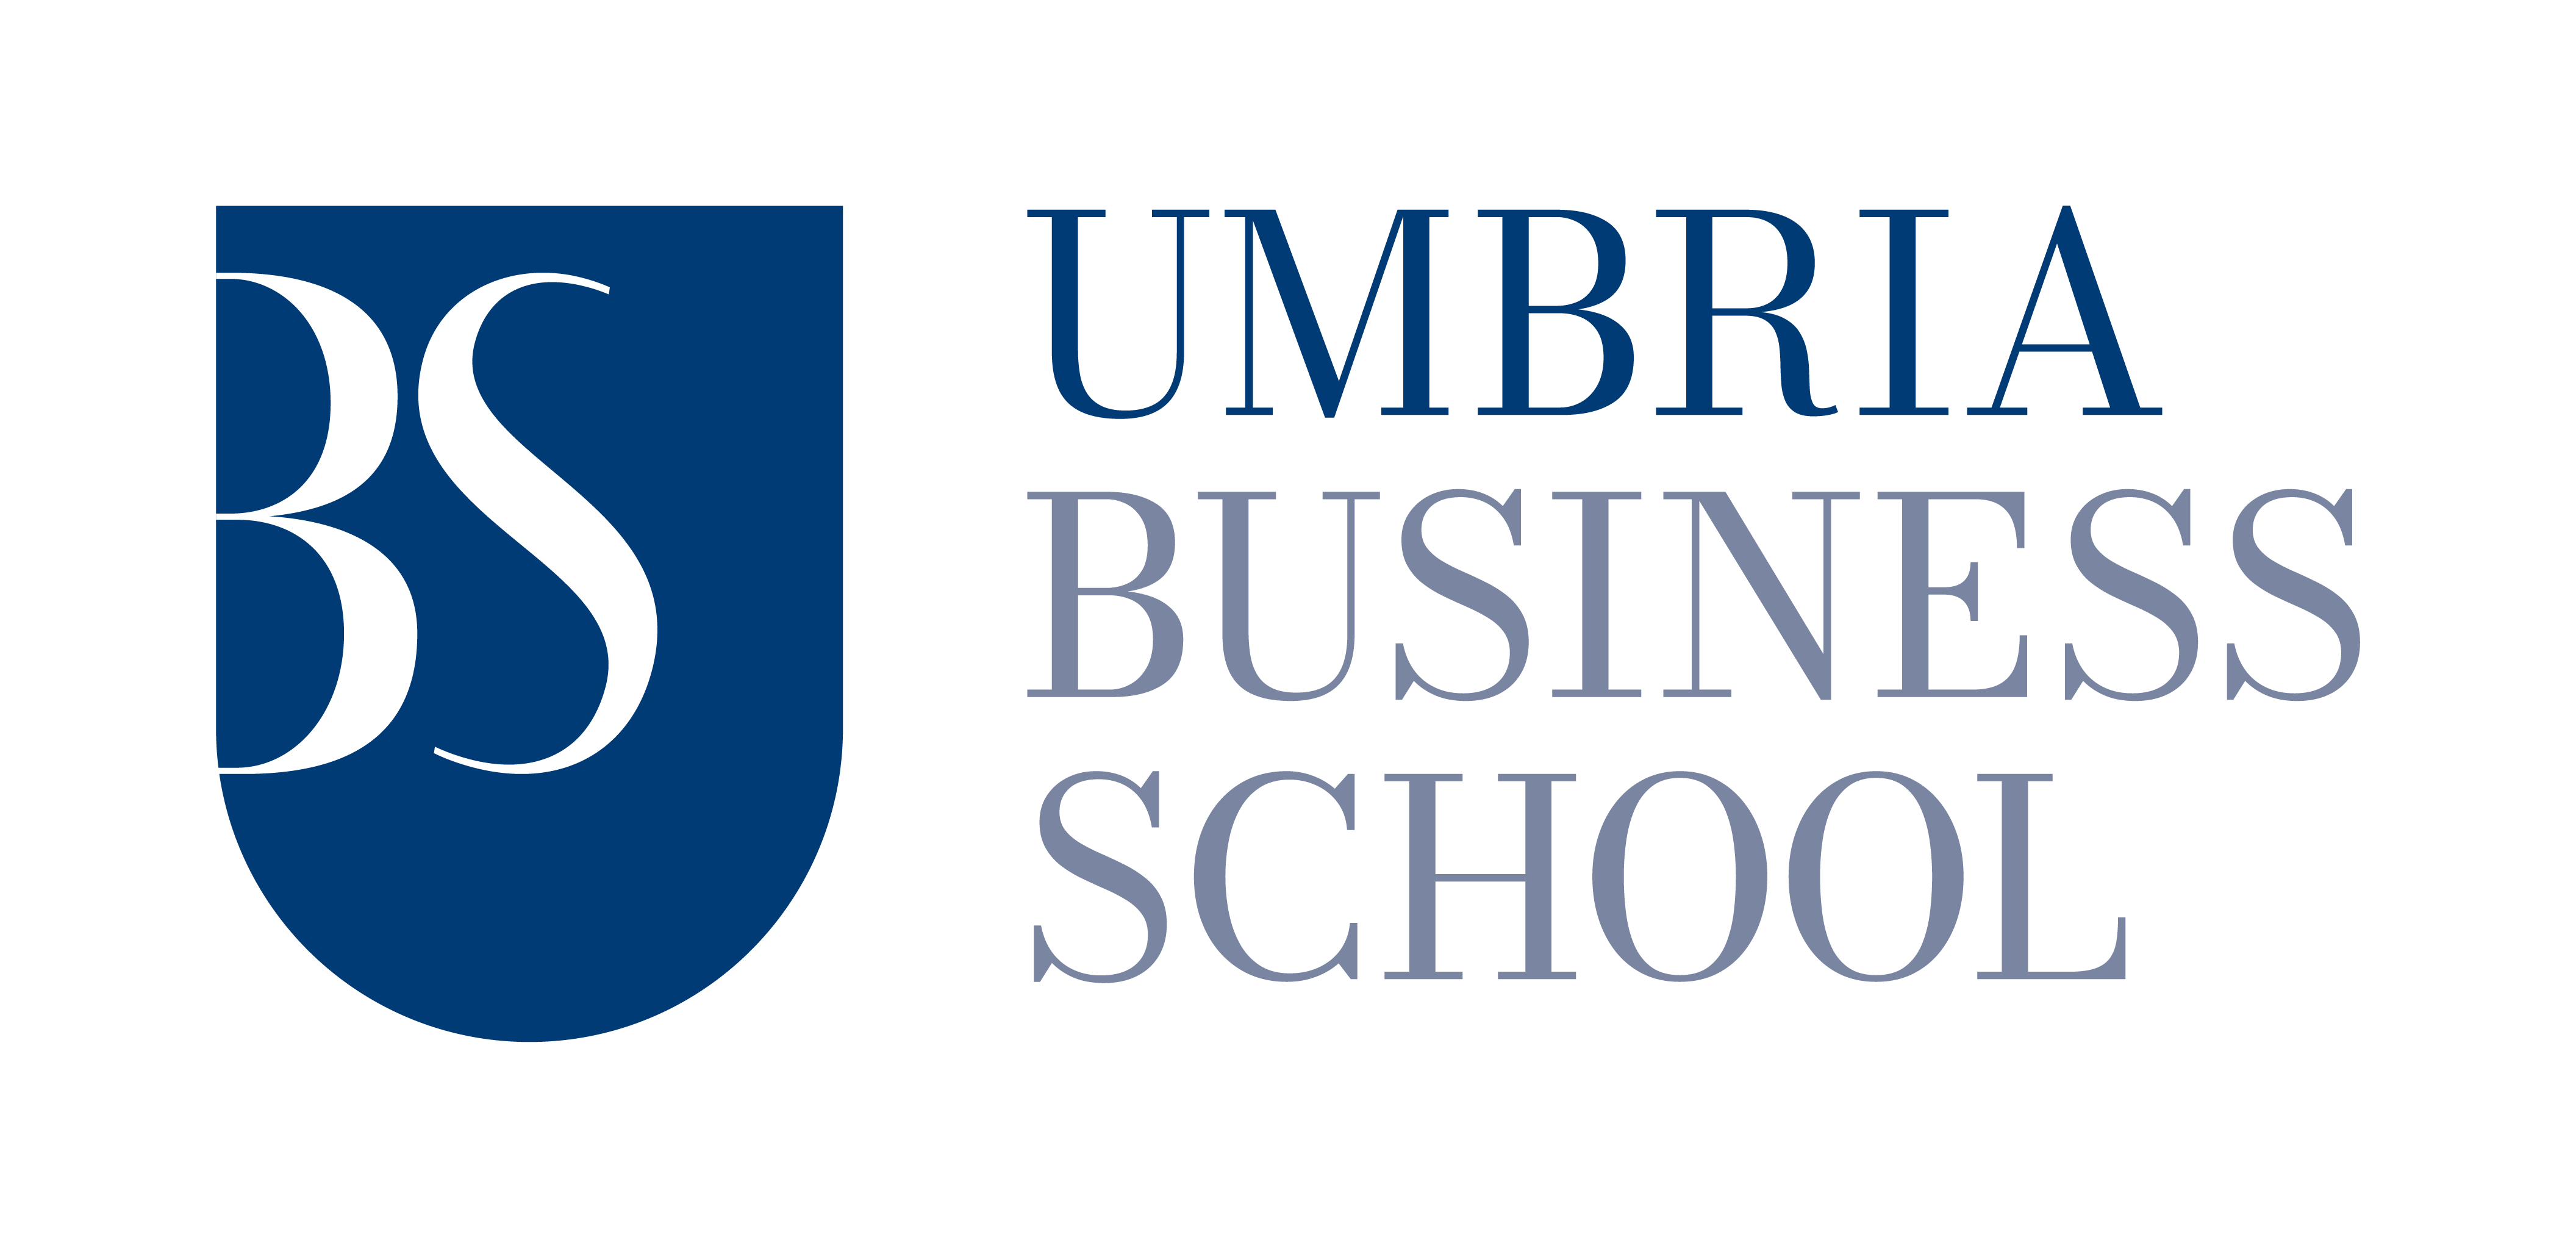 Umbria Business School Rinnova La Propria Immagine E Lancia Un Nuovo Sito Web E Una Nuova